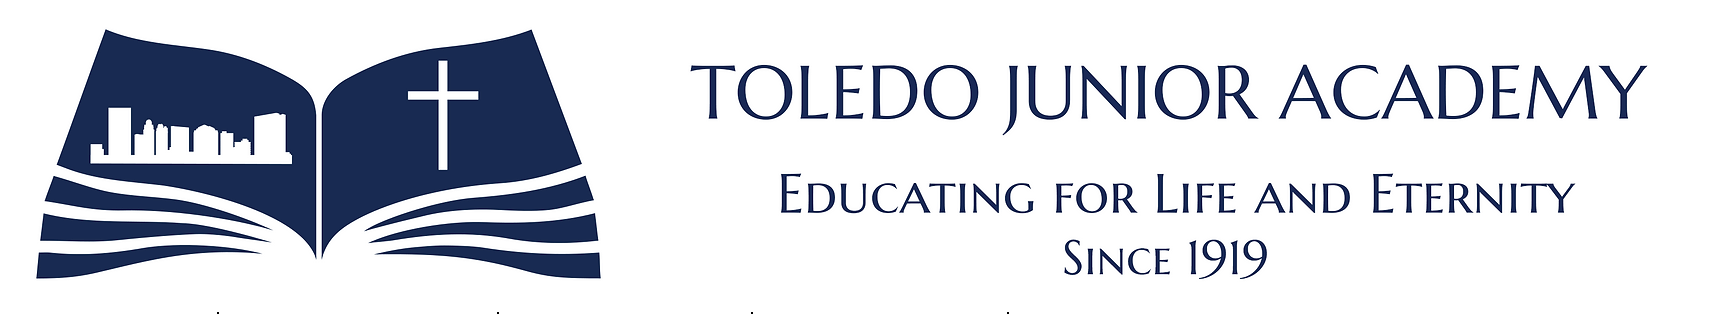 Toledo Junior Academy